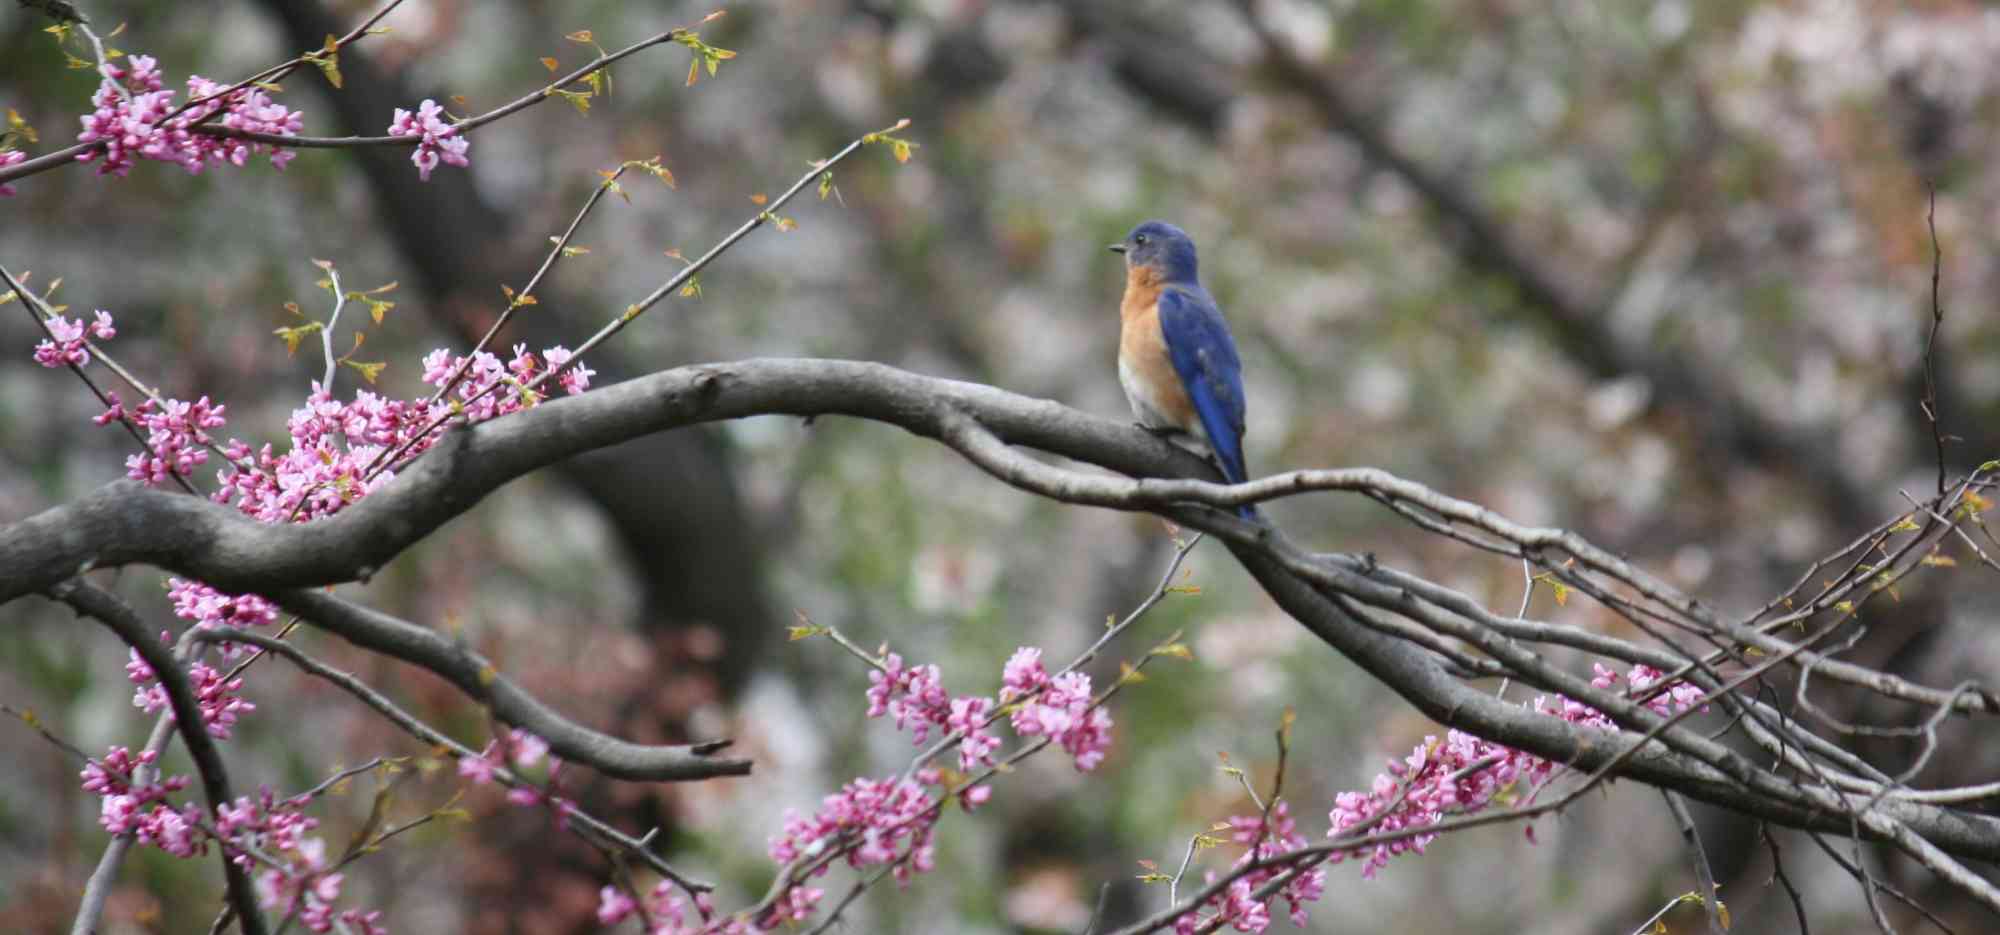 Eastern bluebird in Redbud Tree